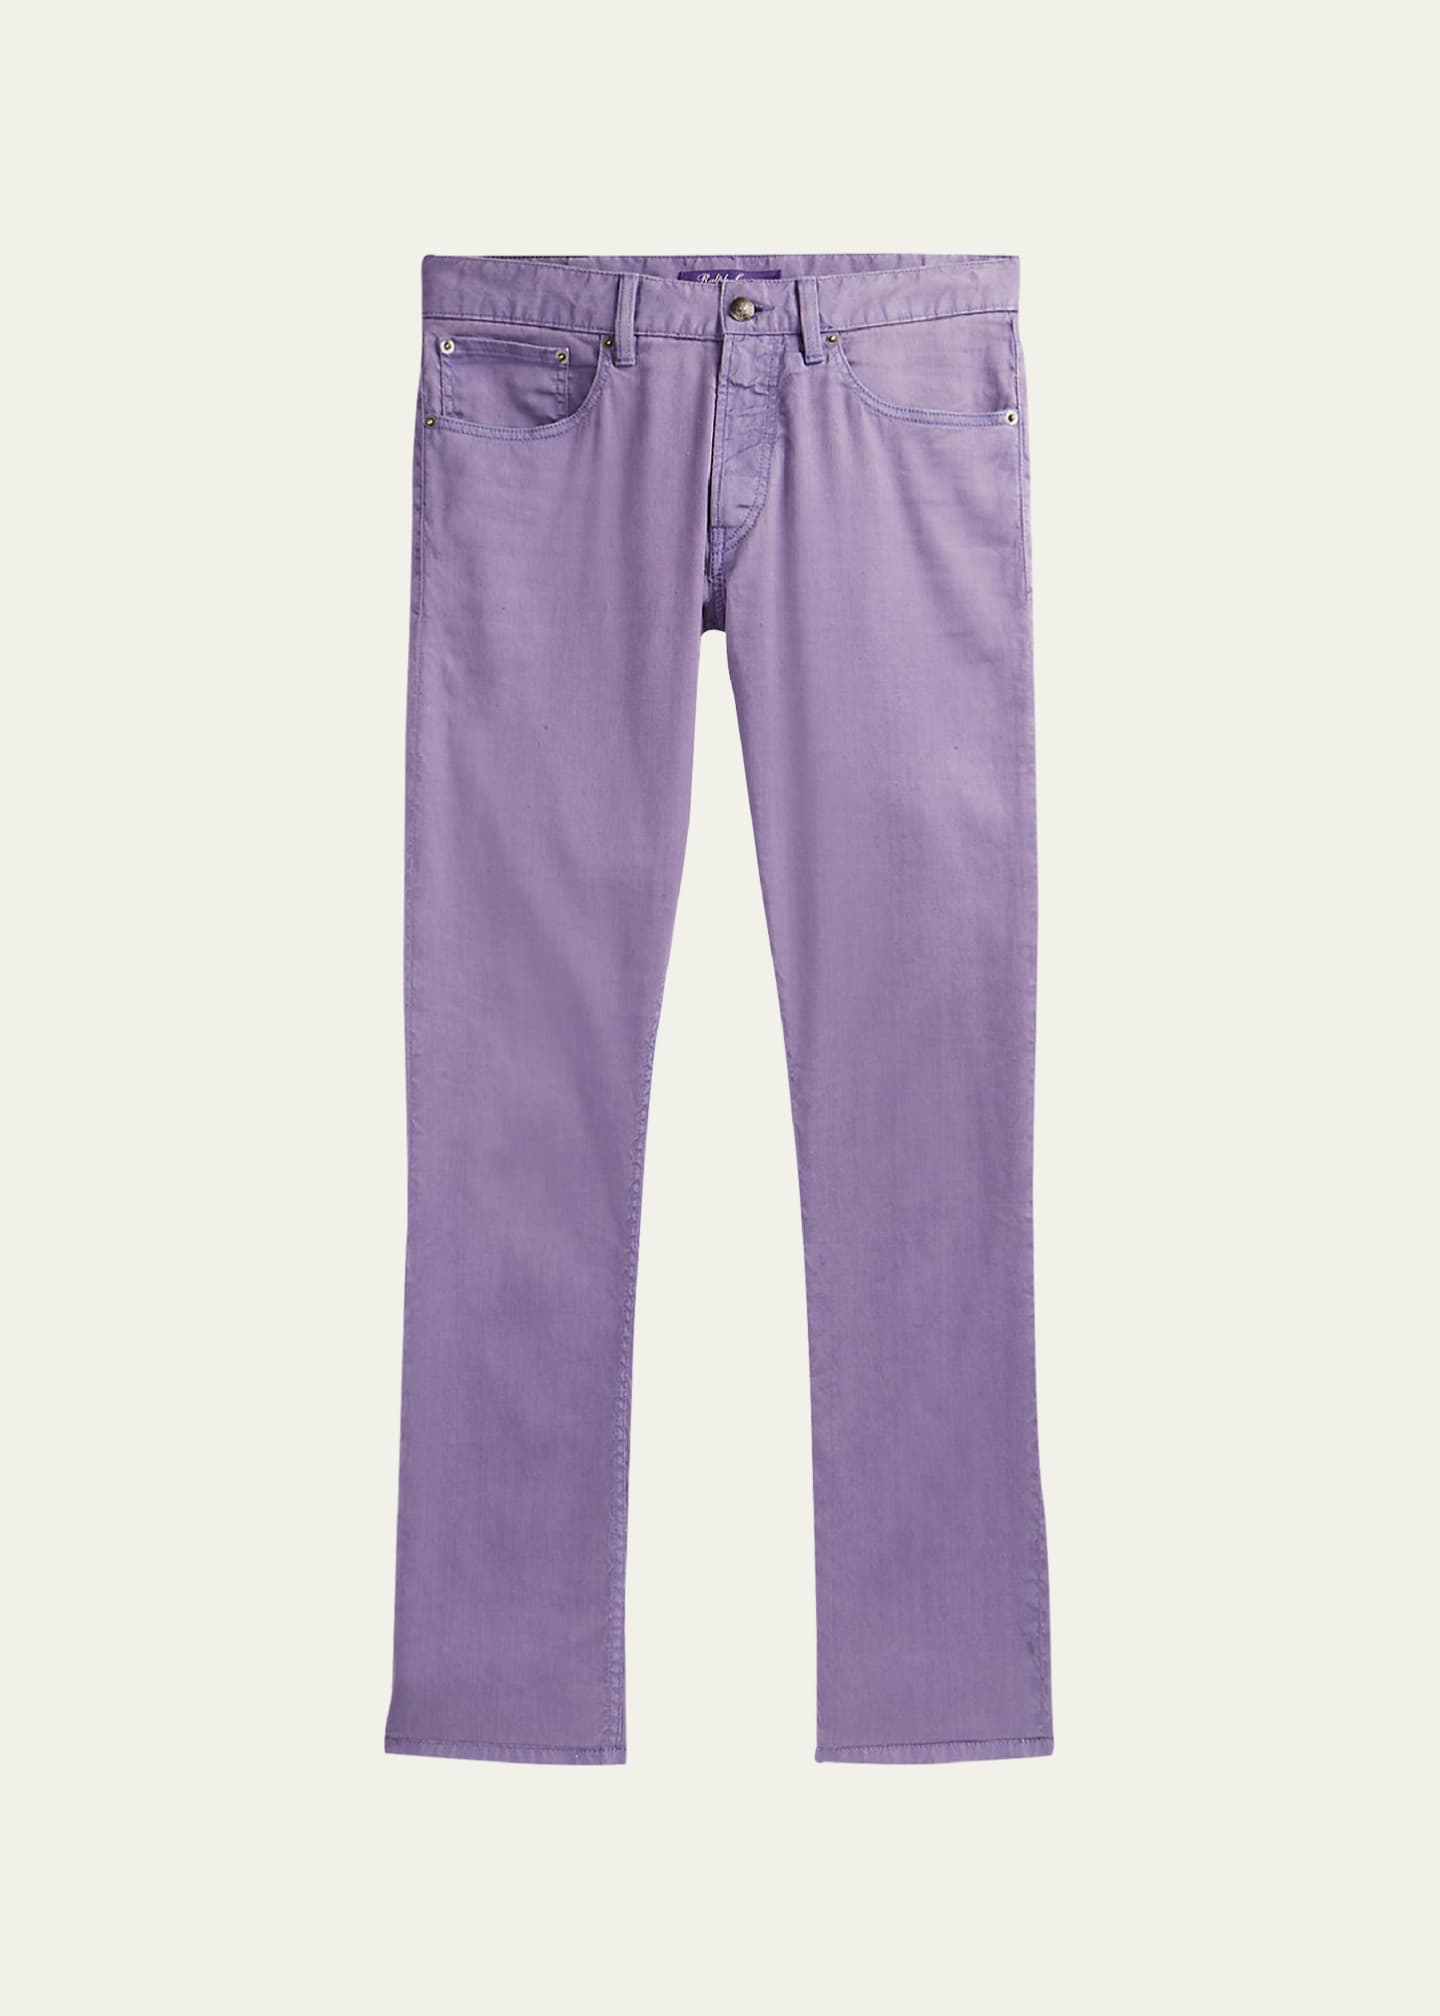 Jeans Purple brand Beige size 32 US in Cotton - 42341880